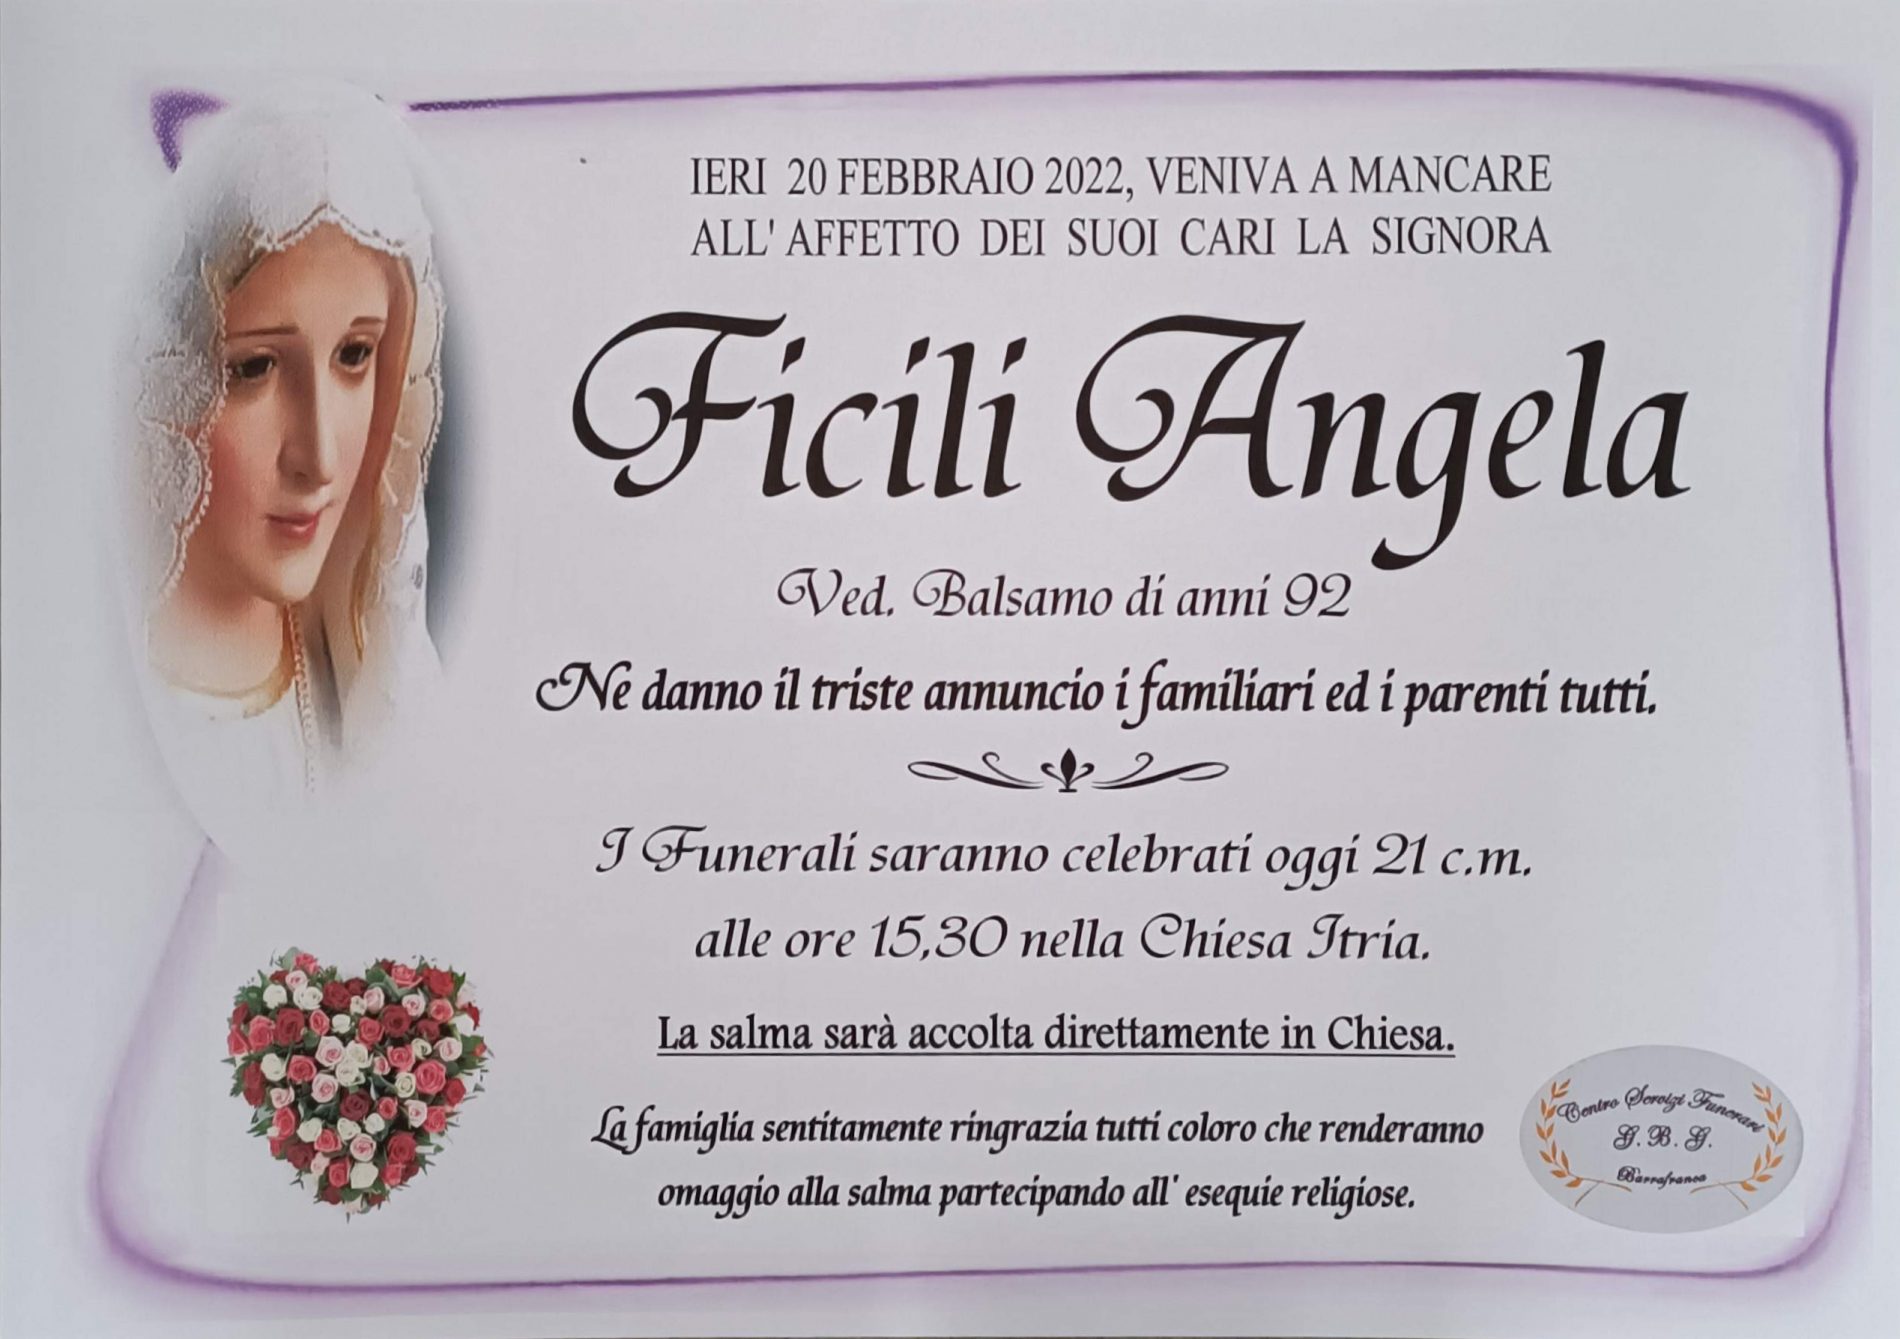 Annuncio servizi funerari agenzia G.B.G. sig.ra Filici Angela ved. Balsamo di anni 92